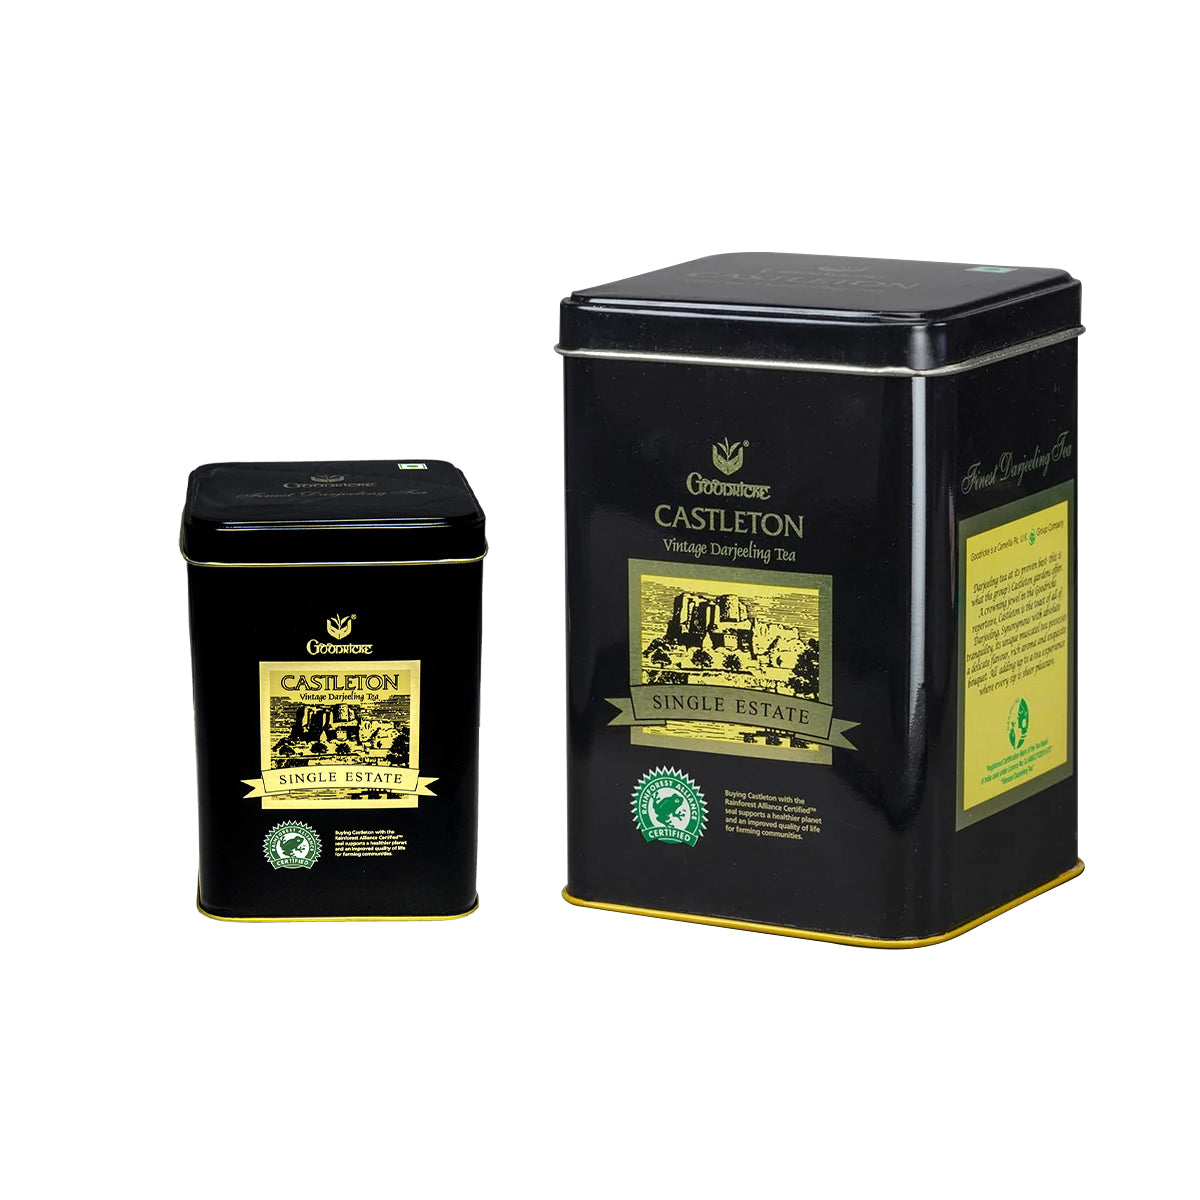 Castleton Vintage Darjeeling Tea  Combo Pack (250 gms + 100 gms) Each pack of 2